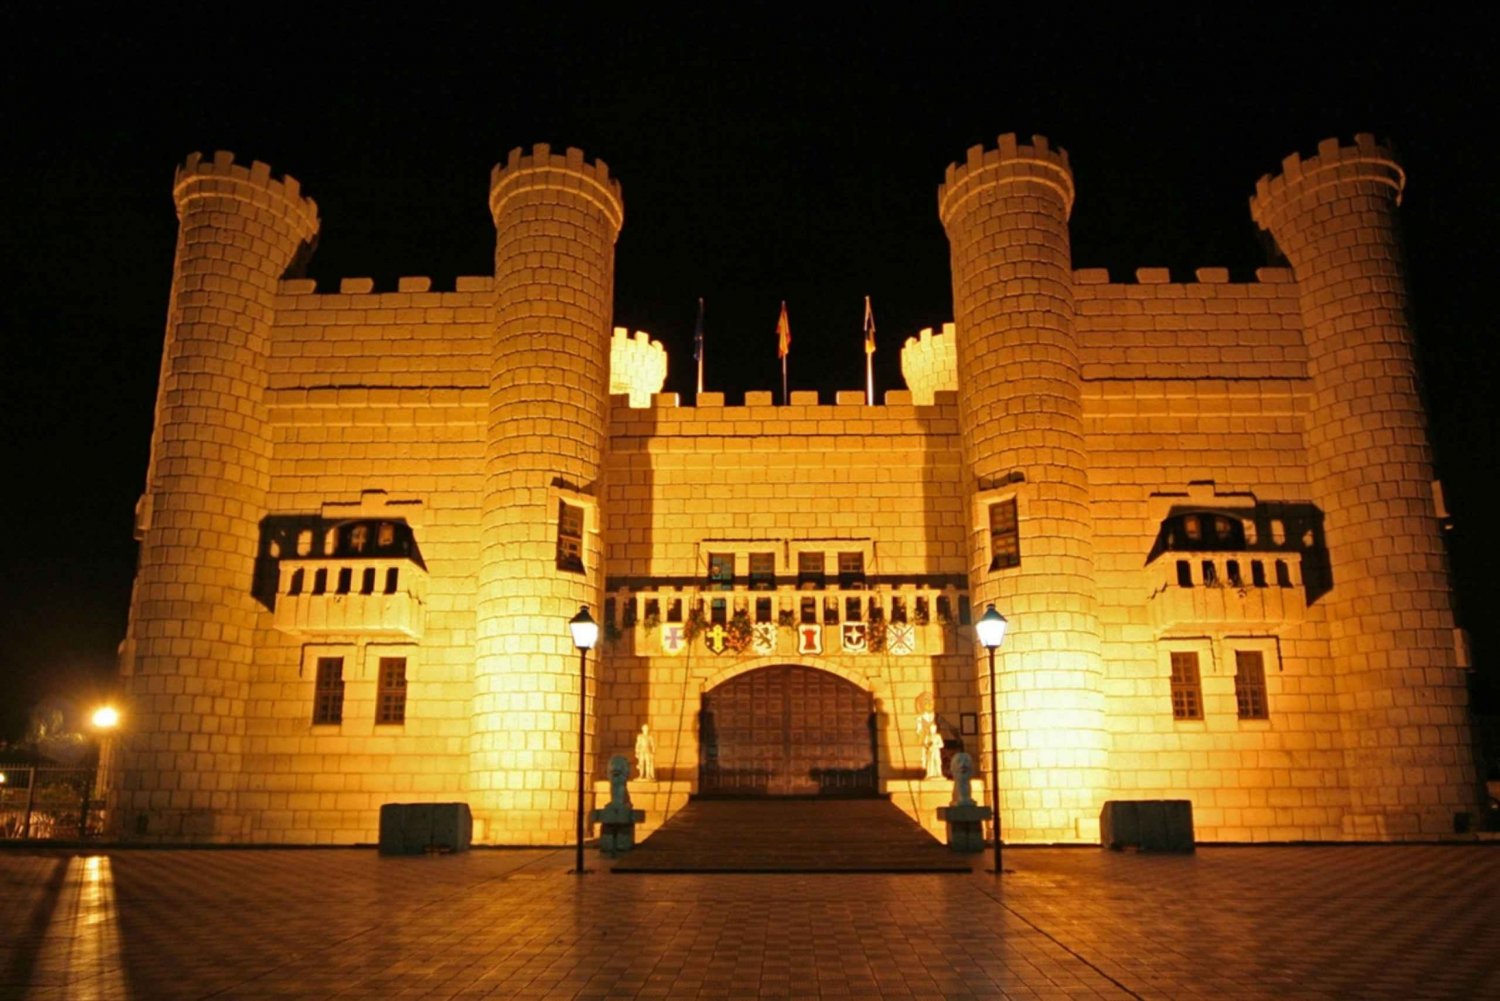 Tenerife: Castillo San Miguel middelalderforestilling med middag